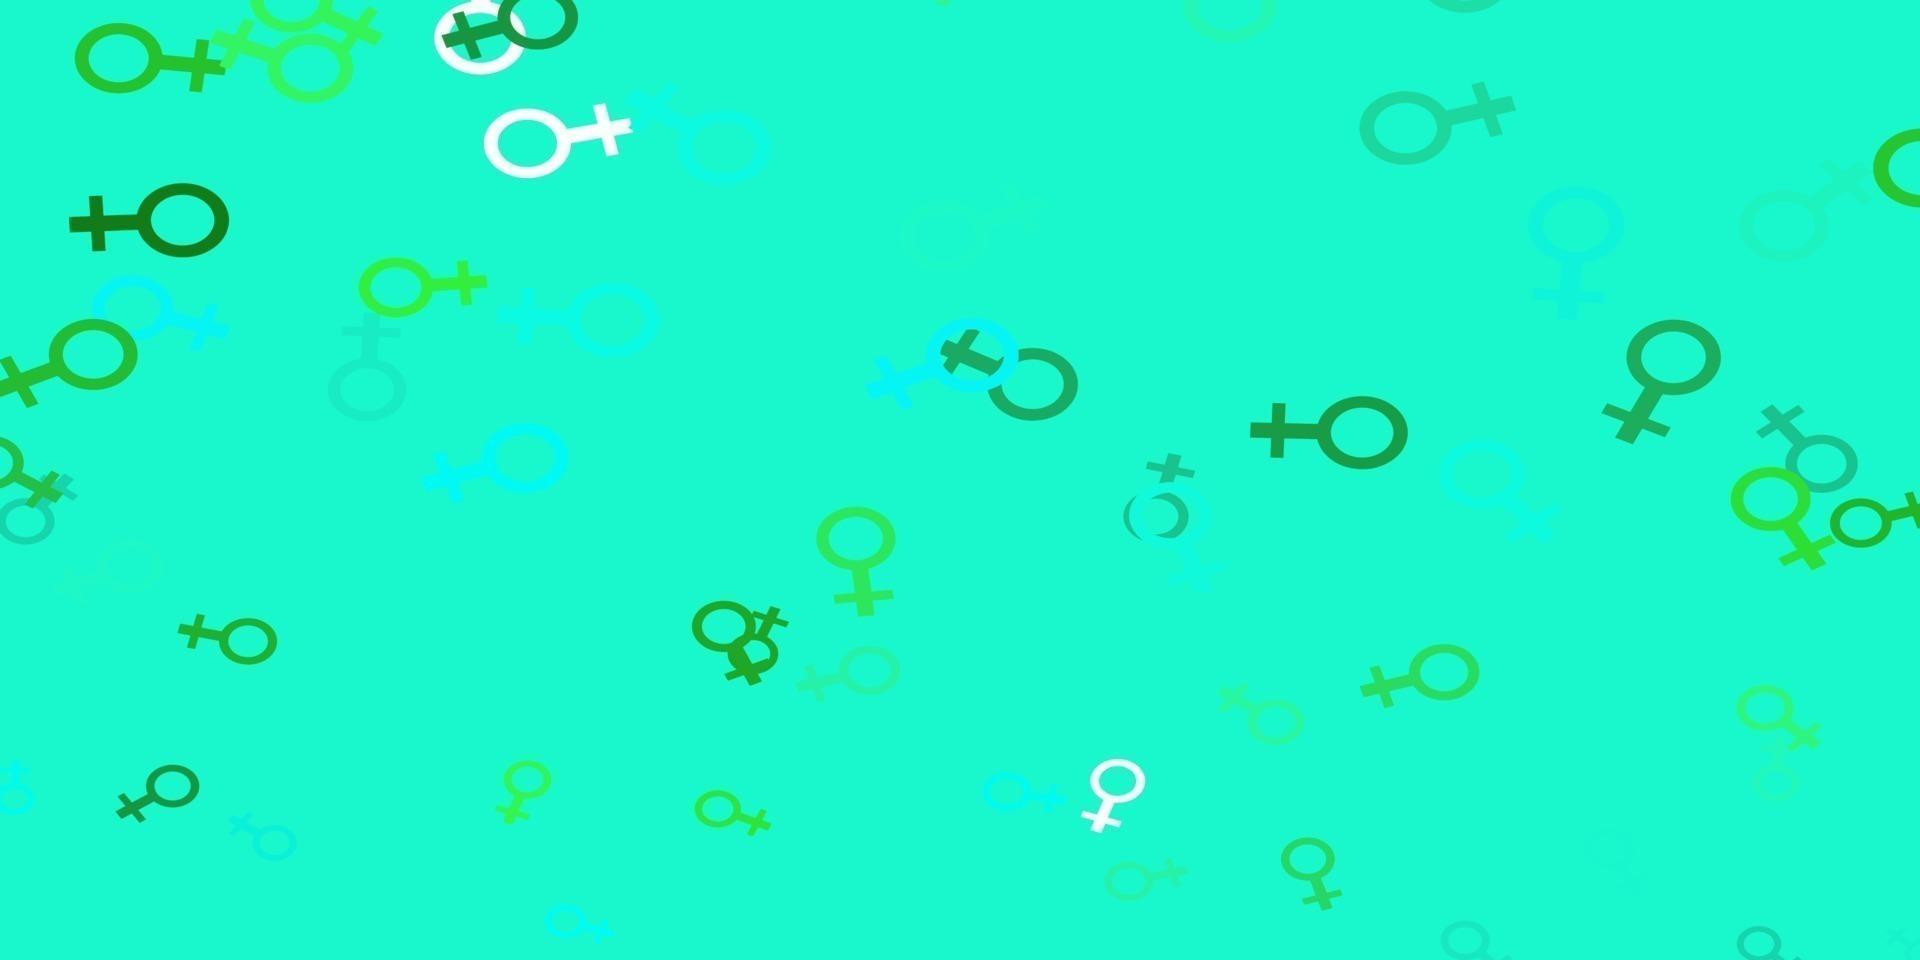 motif vectoriel vert clair avec des éléments de féminisme.